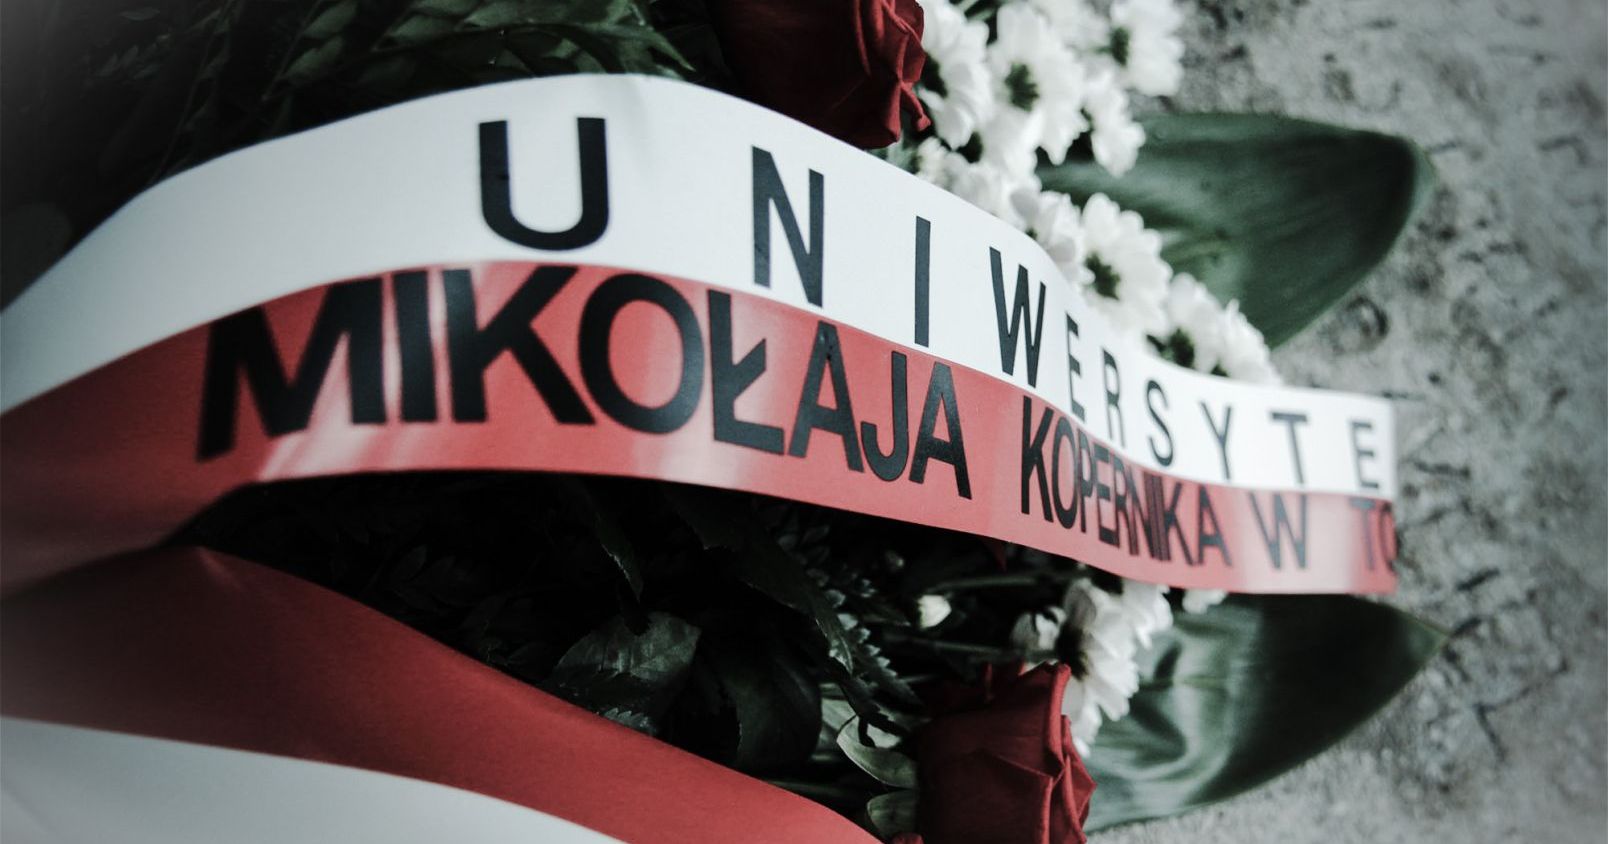  Wiązanka kwiatów z biało-czerwoną szarfą z napisem Uniwersytet Mikołaja Kopernika w Toruniu